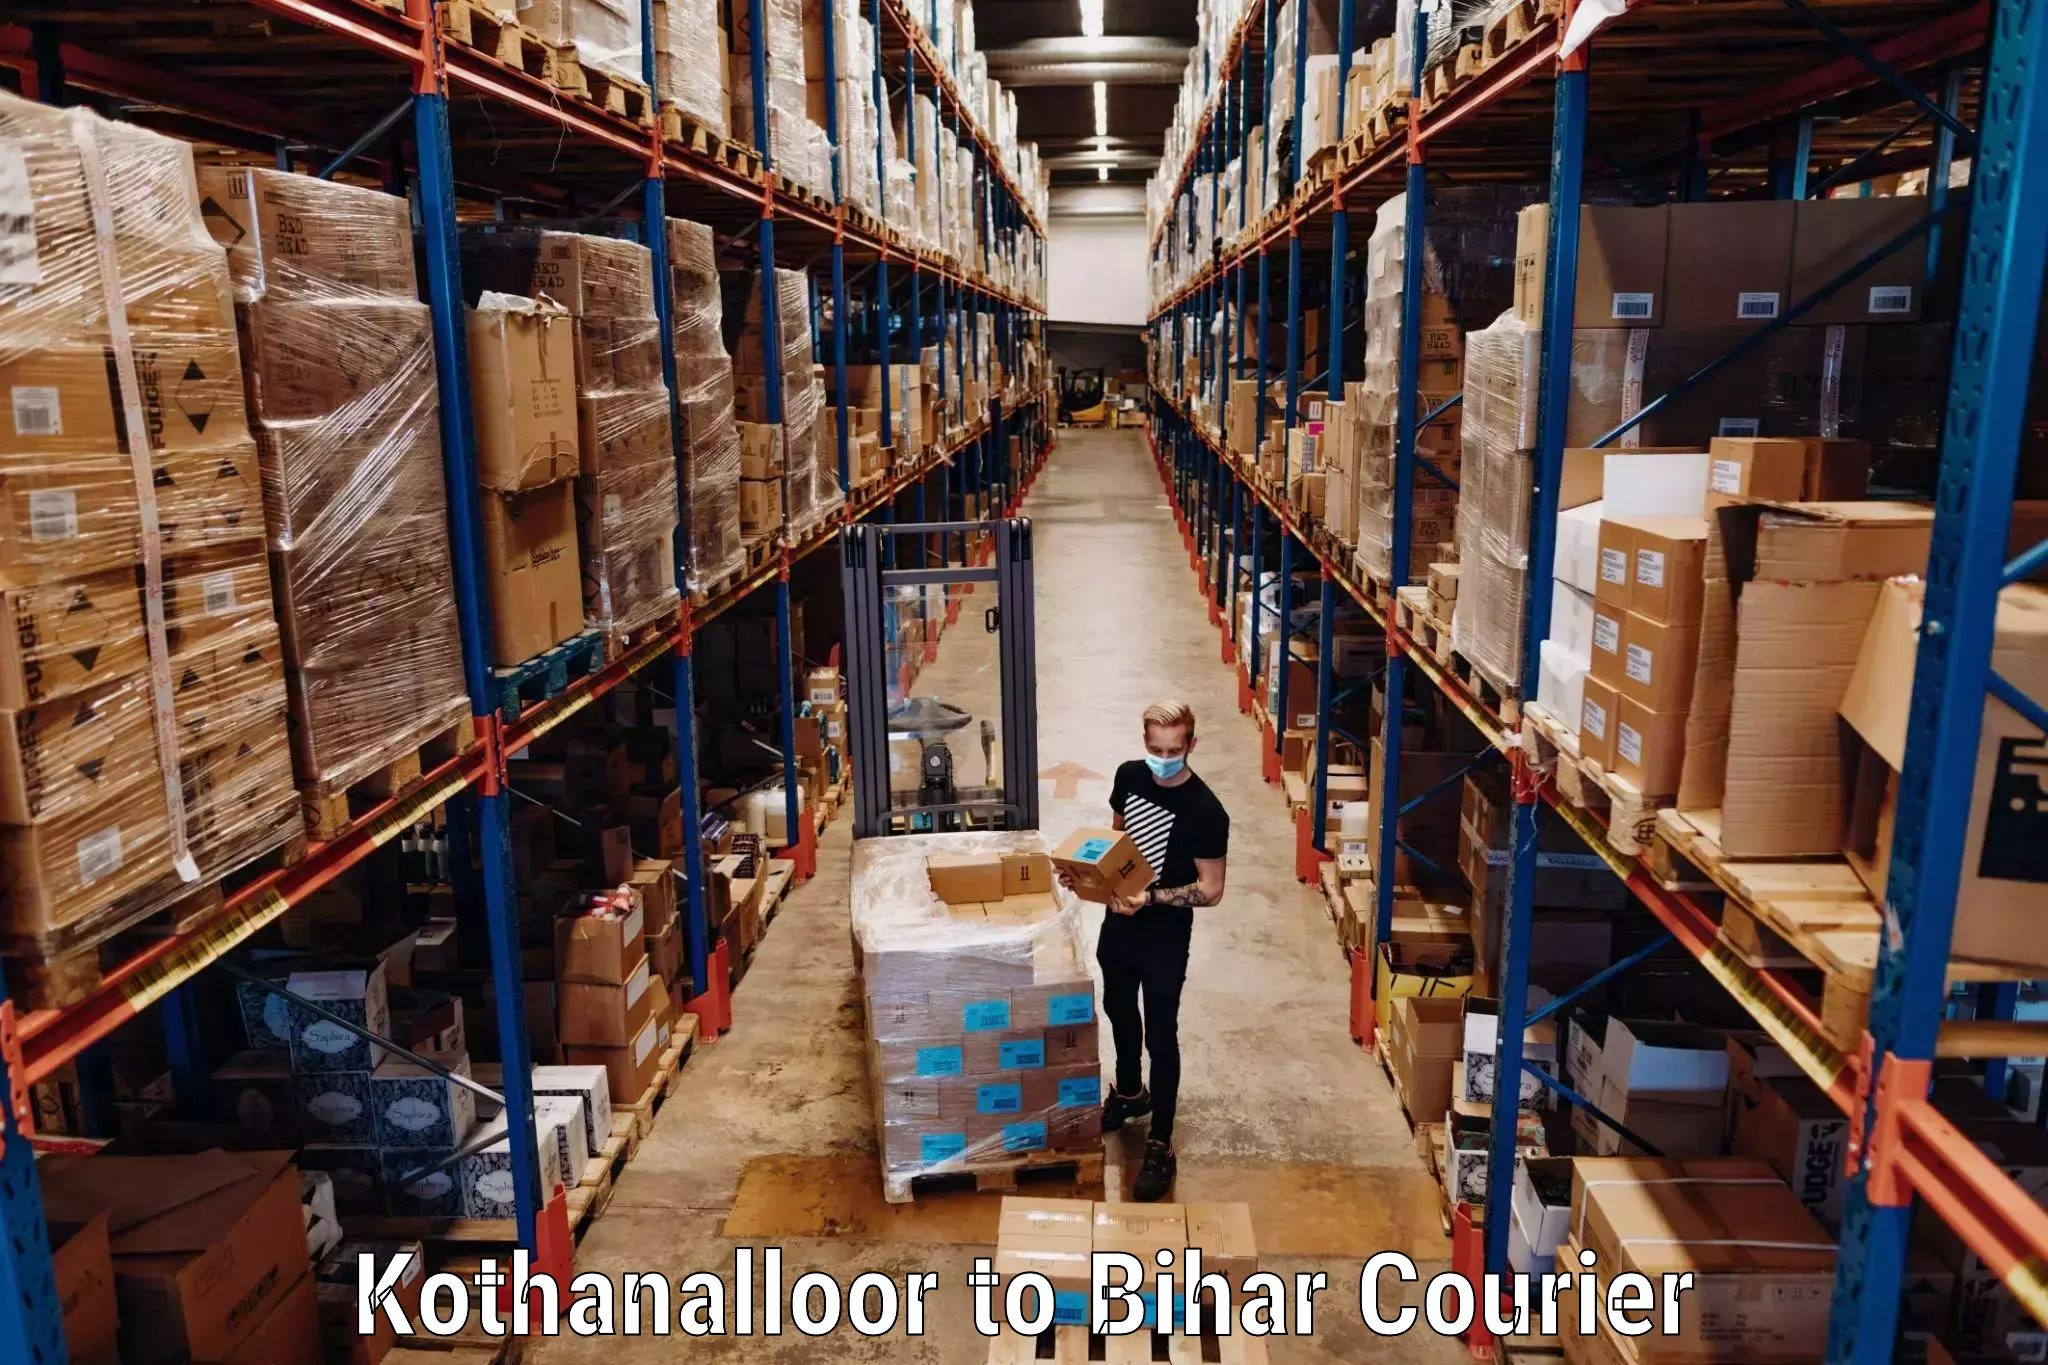 Customized luggage delivery Kothanalloor to Khodaganj